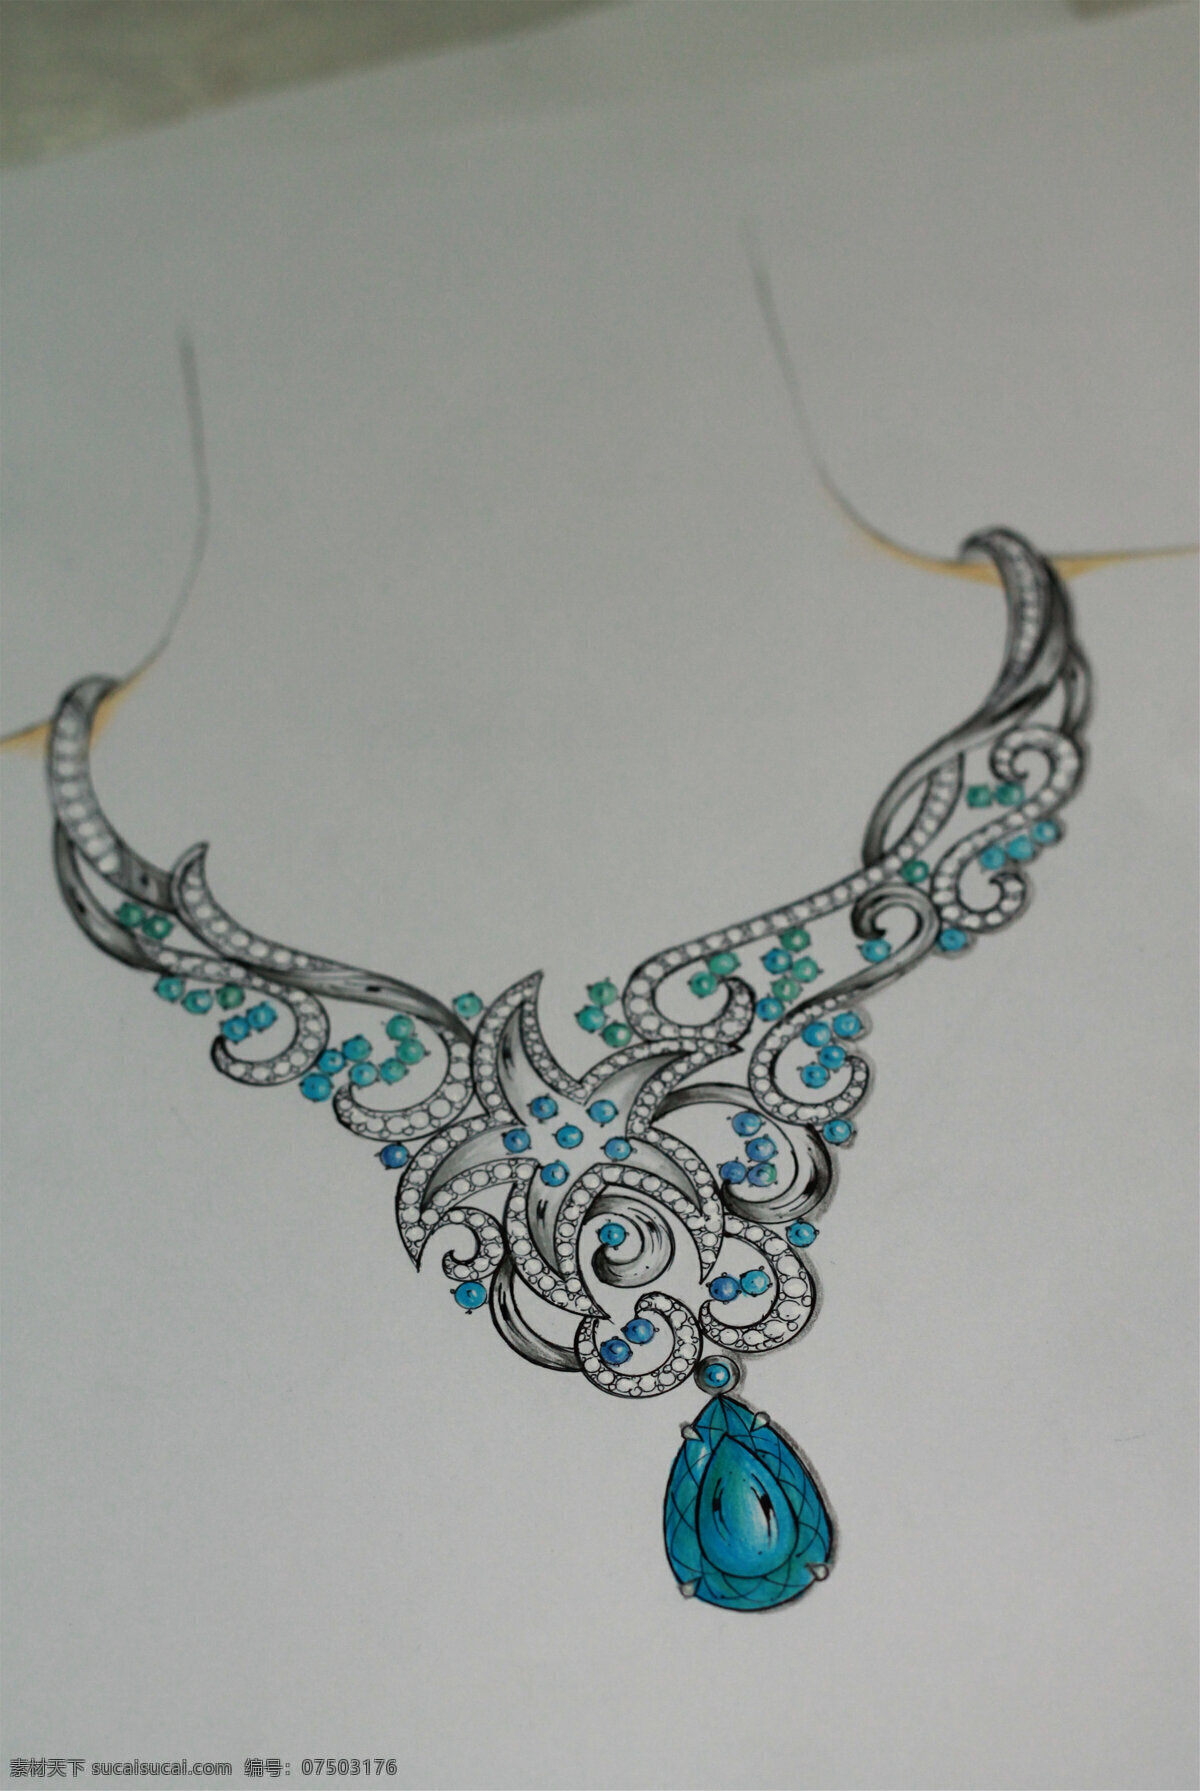 彩色 项链 手绘 珠宝 时尚 创意 潮流 新颖 美丽 灰色